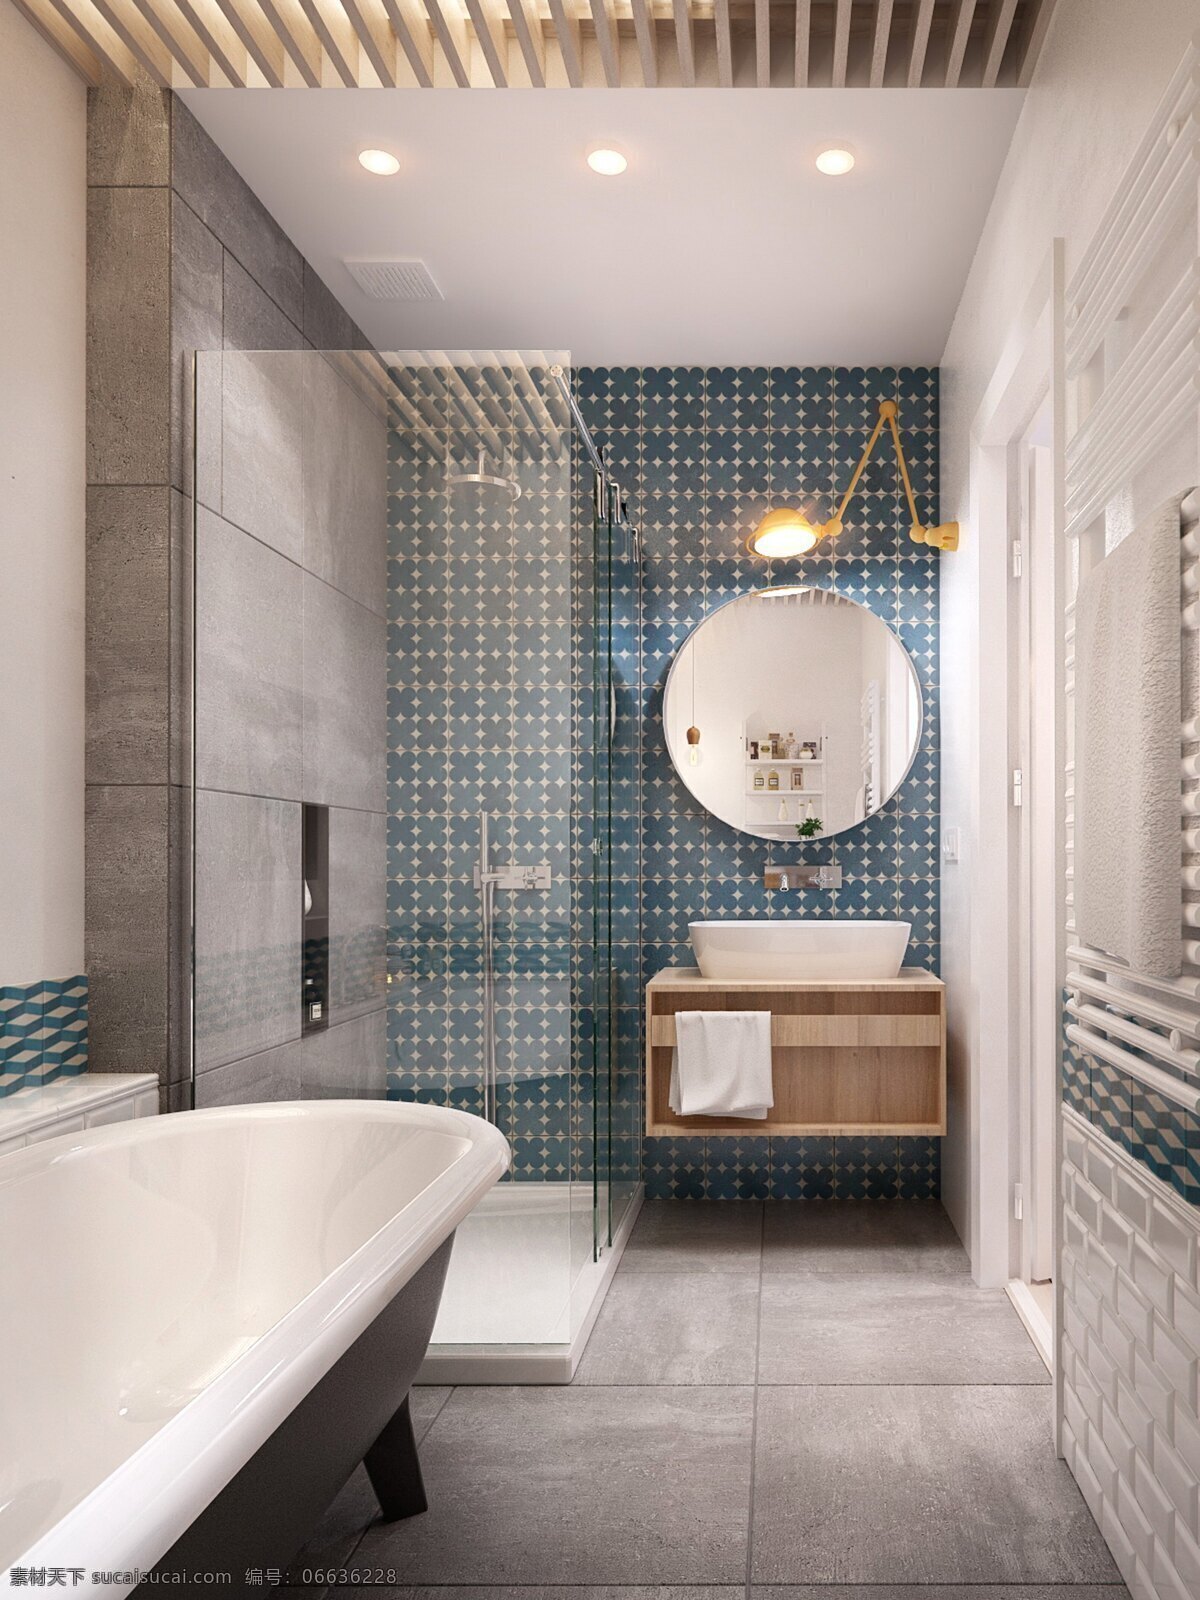 现代 简约 卫生间 蓝色 背景 墙 室内装修 效果图 玻璃门 灰色地板 卫生间装修 浴缸